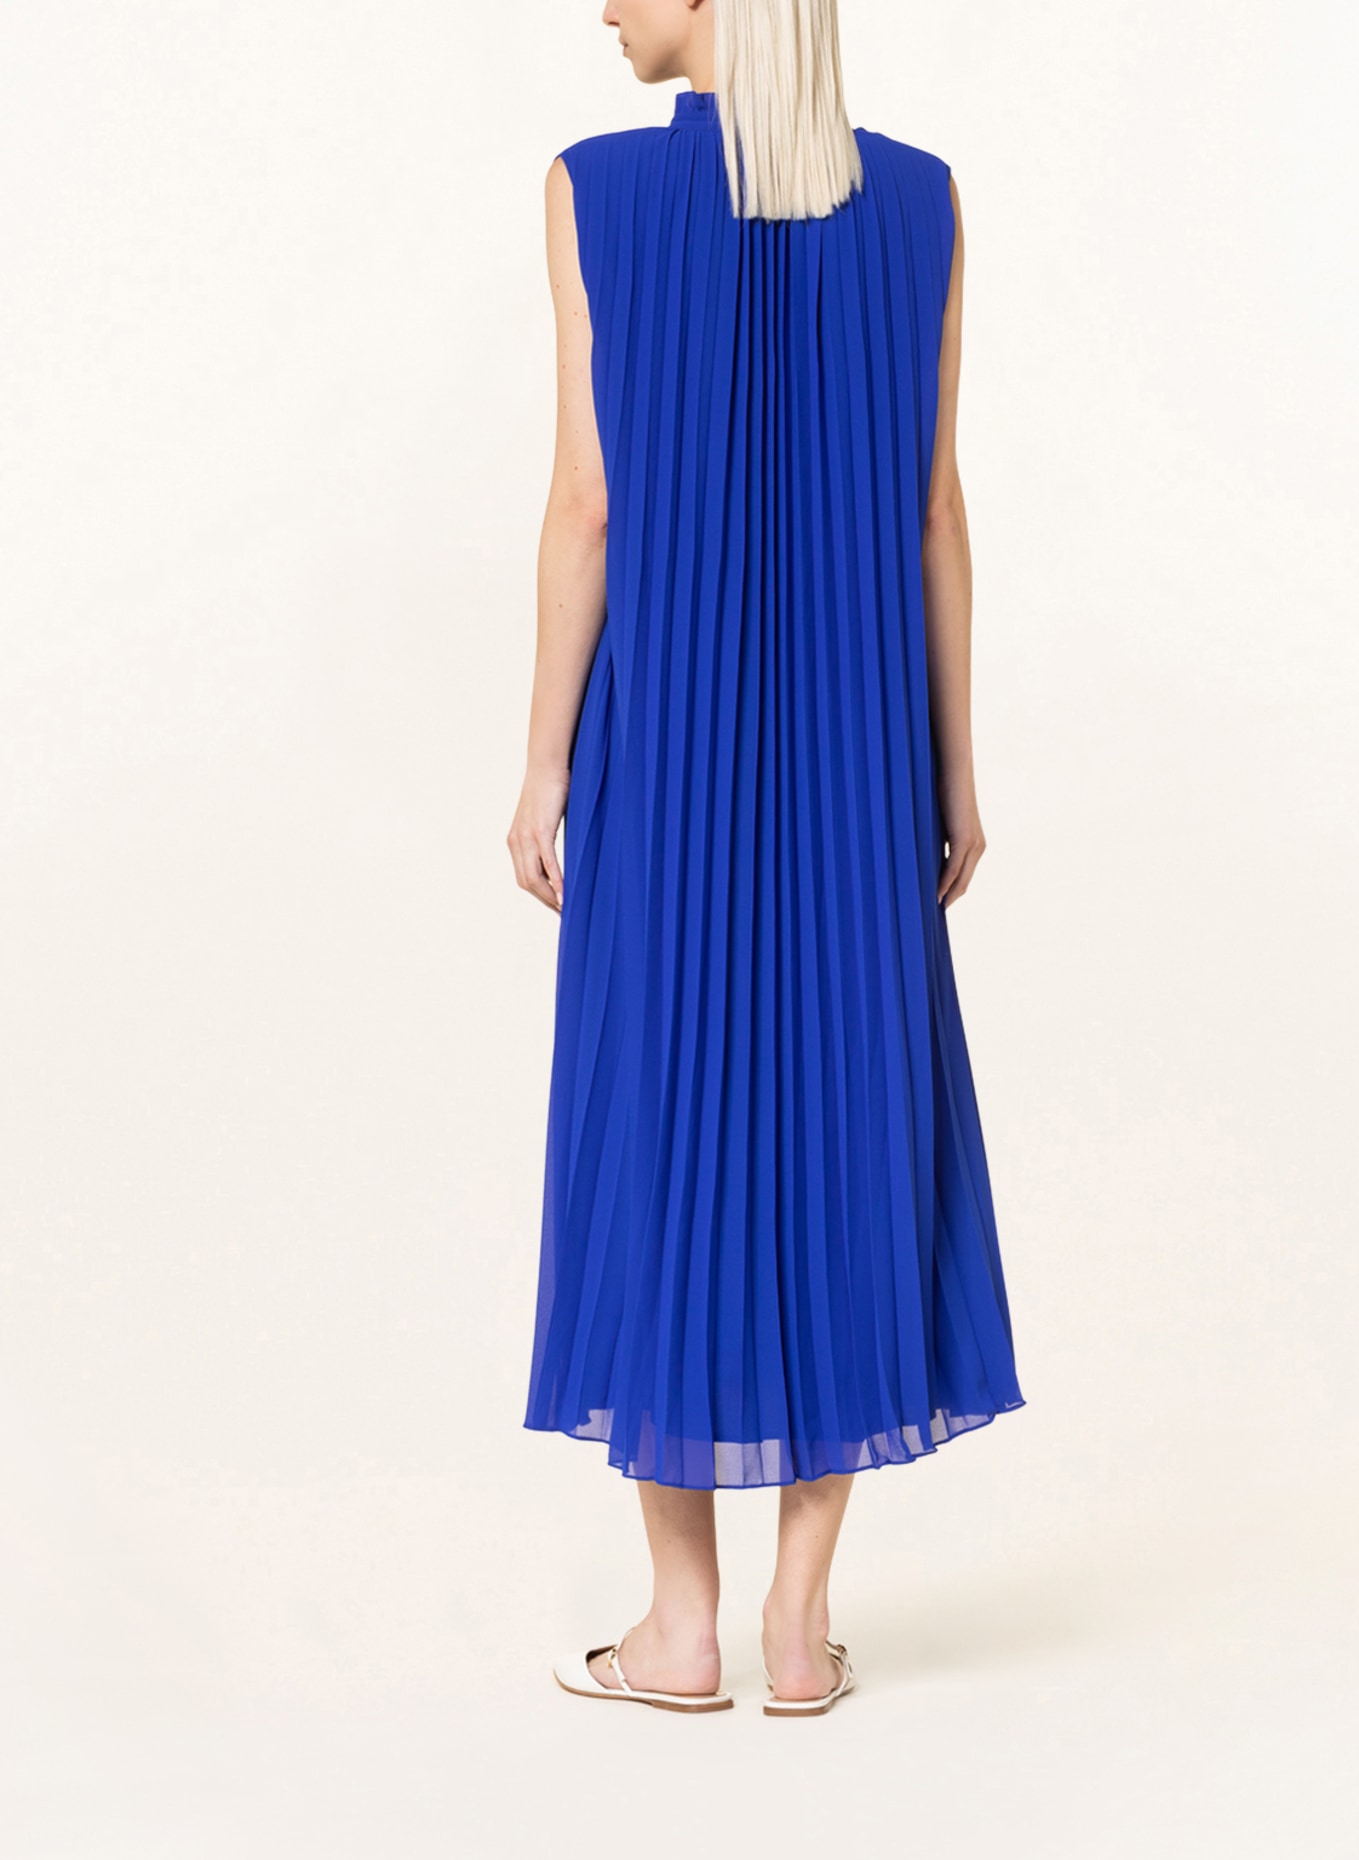 MRS & HUGS Pleated dress, Color: BLUE (Image 3)